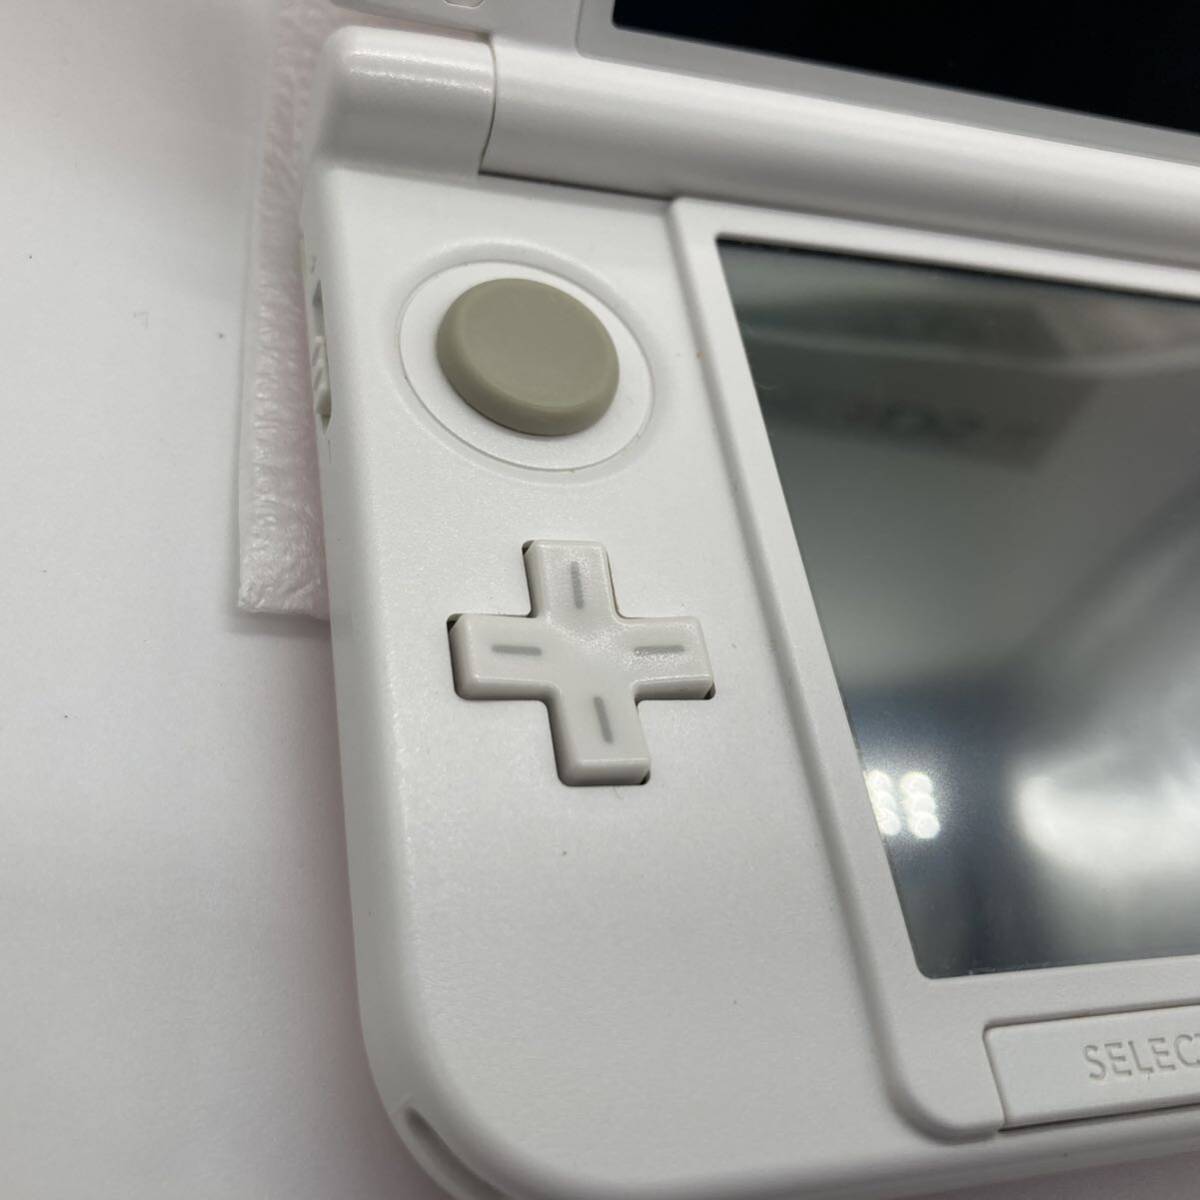 [ б/у ]1 иен ~ nintendo Nintendo 3DS LL розовый × белый SPR-001 с коробкой электризация OK текущее состояние товар оригинальная коробка есть стилус приложен 